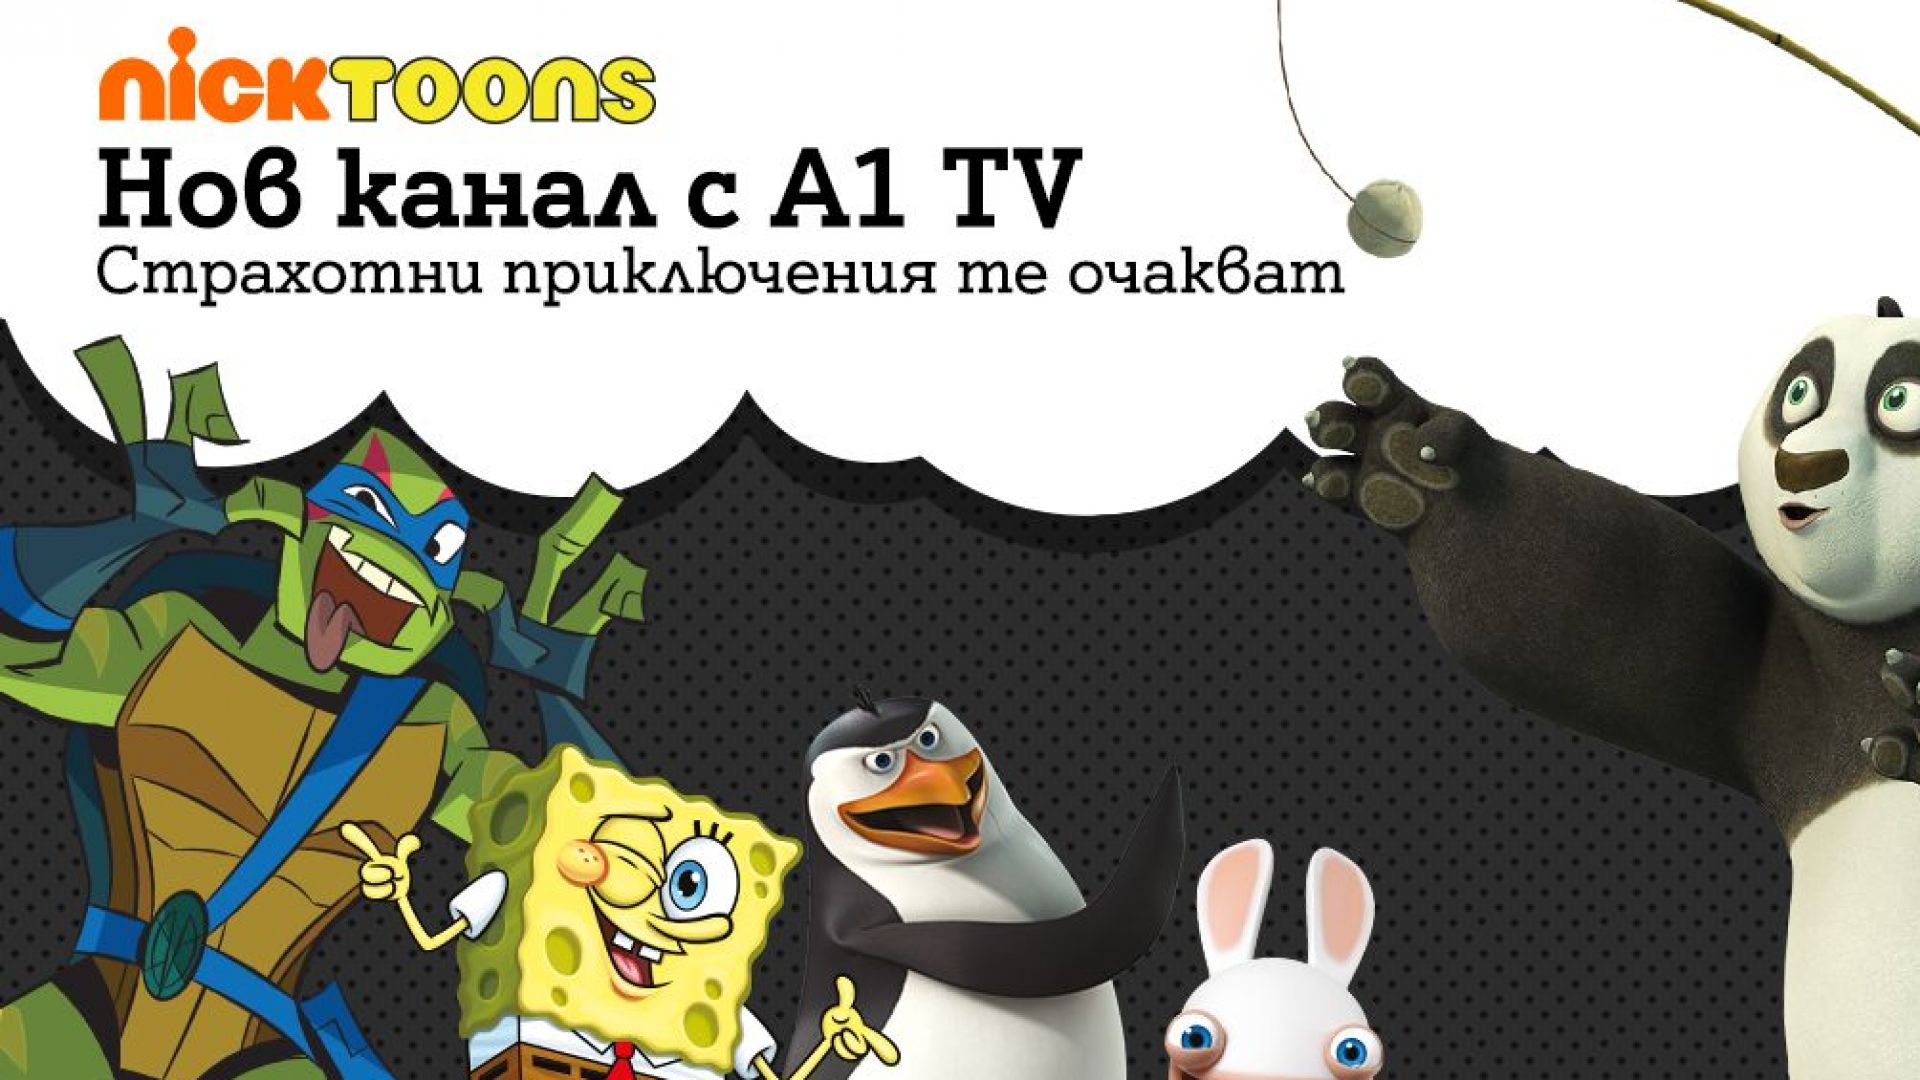 Новият детски канал Nicktoons вече се предлага за ТВ клиентите на А1